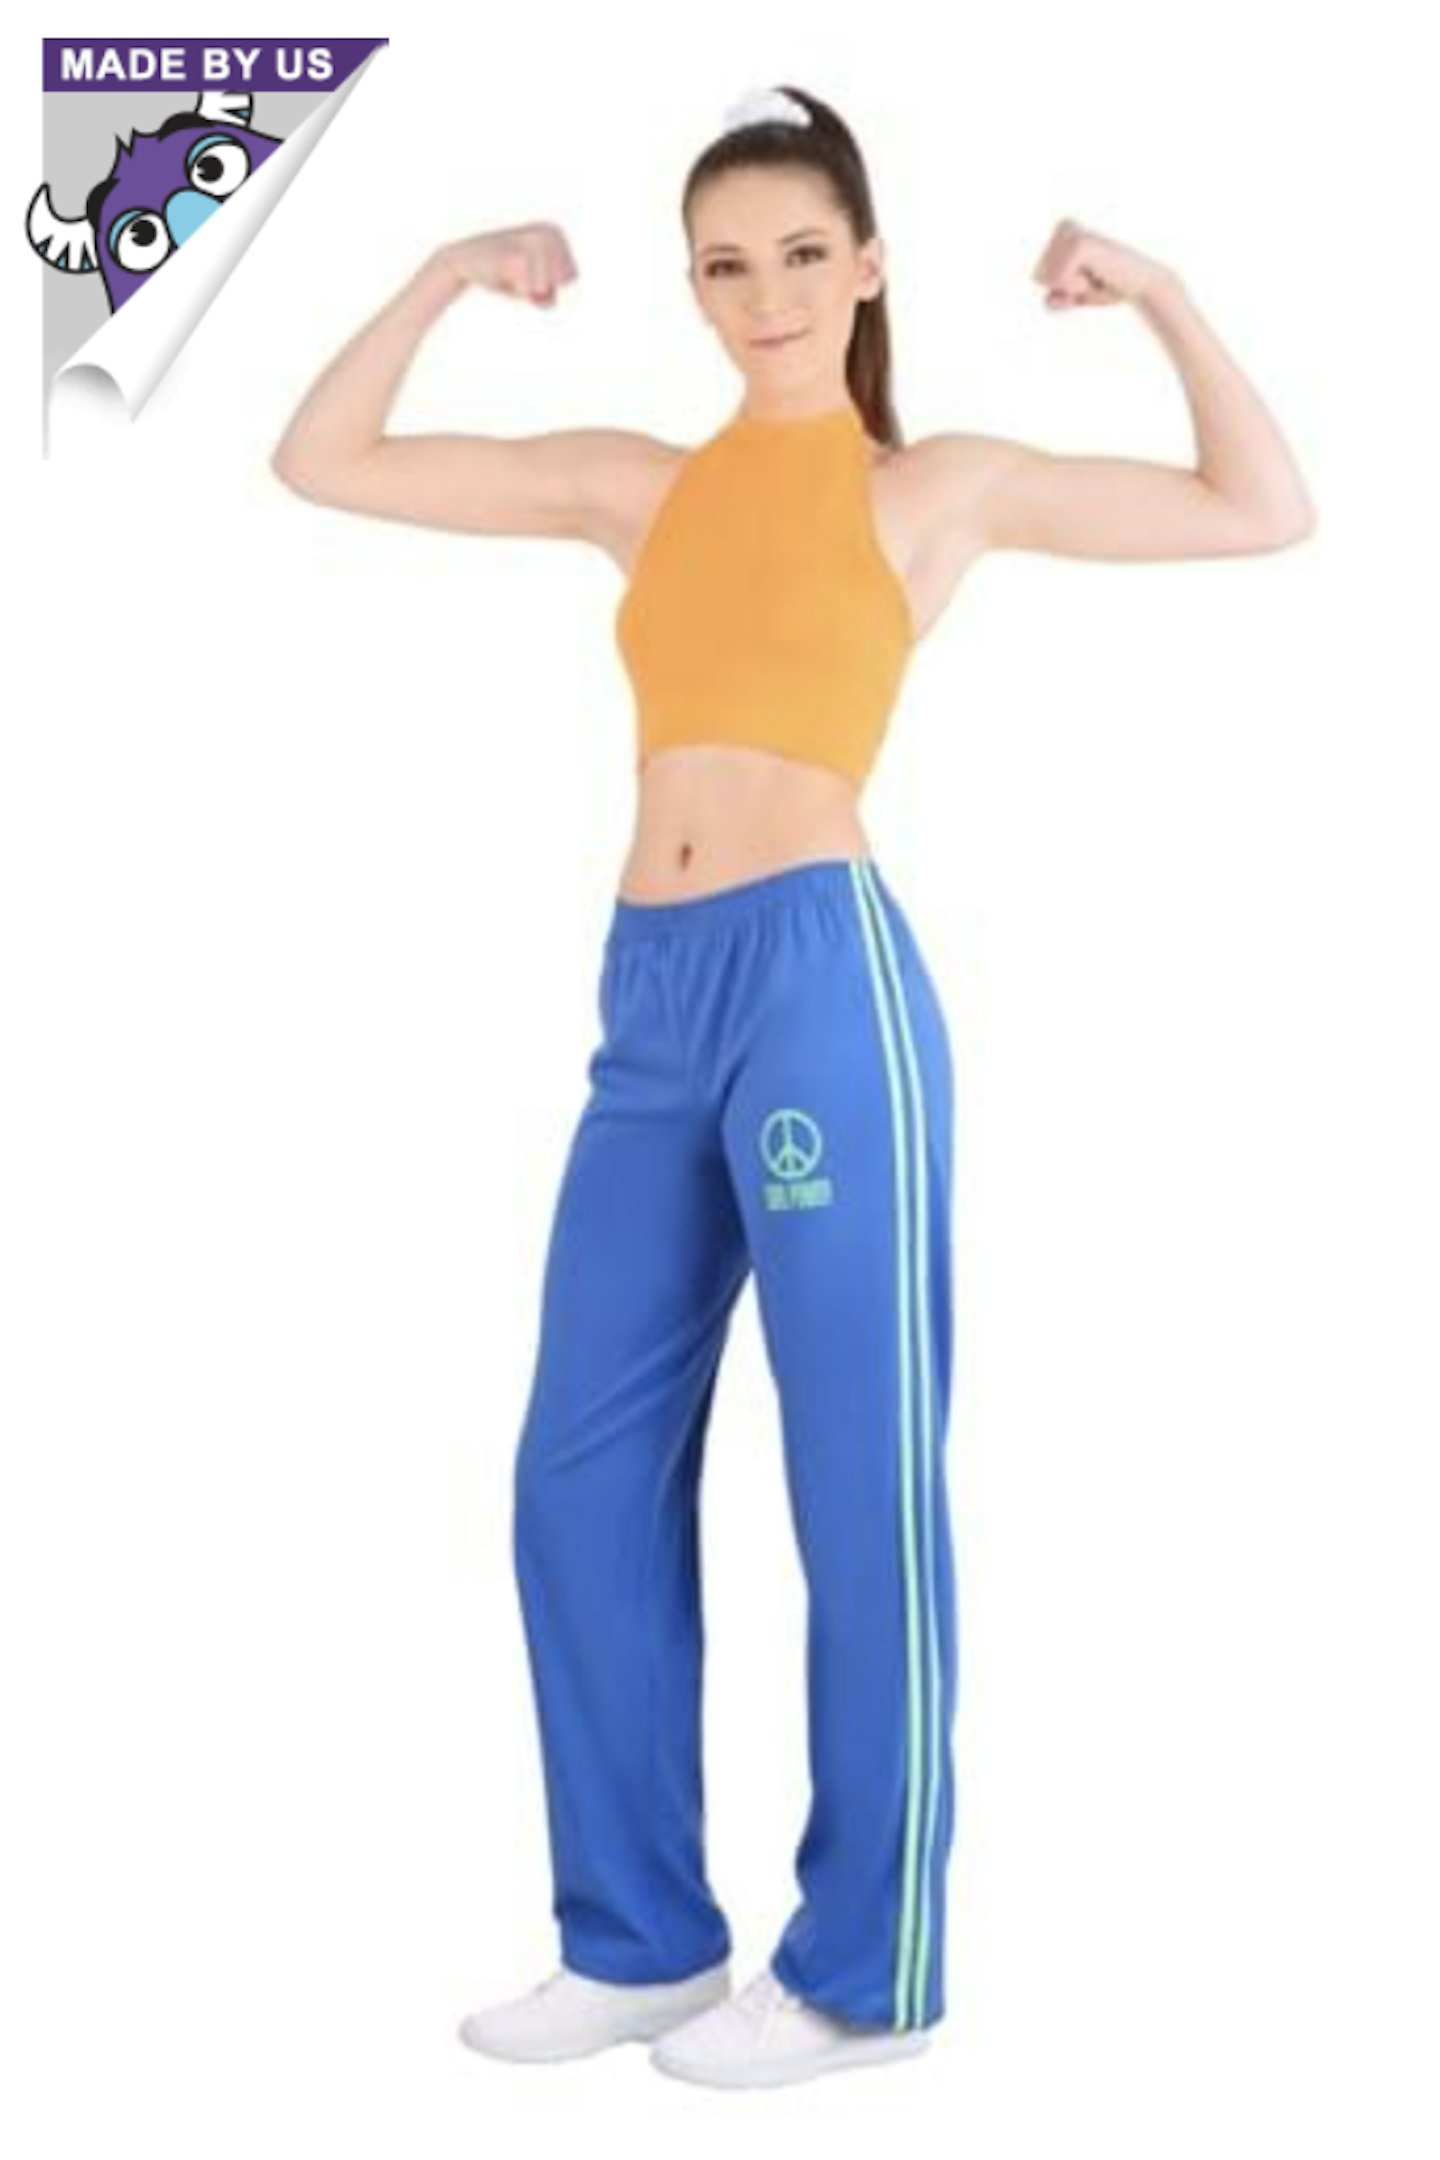 Women's Athletic Girl Power Popstar Costume